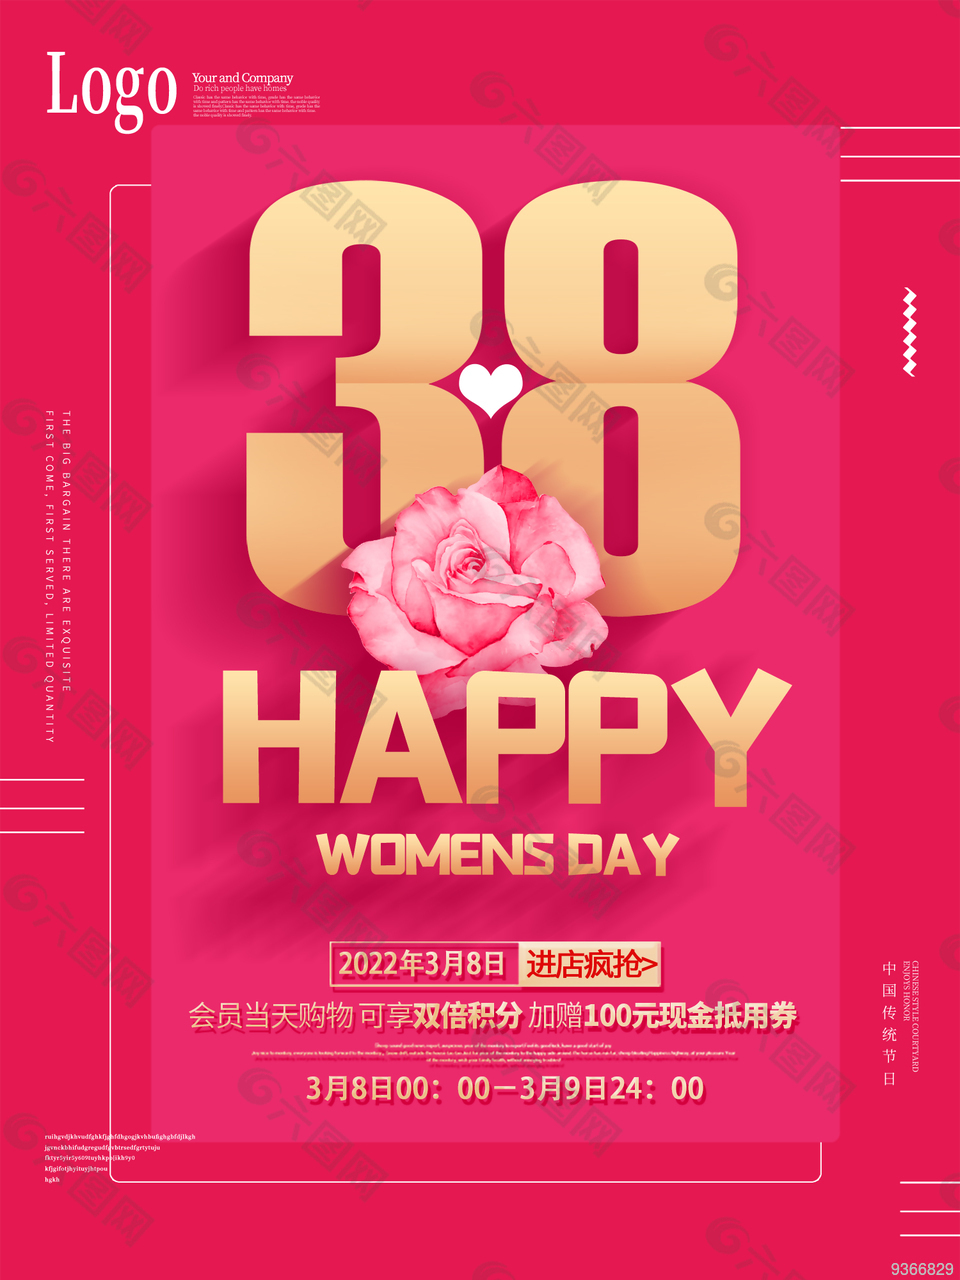 妇女节快乐海报设计